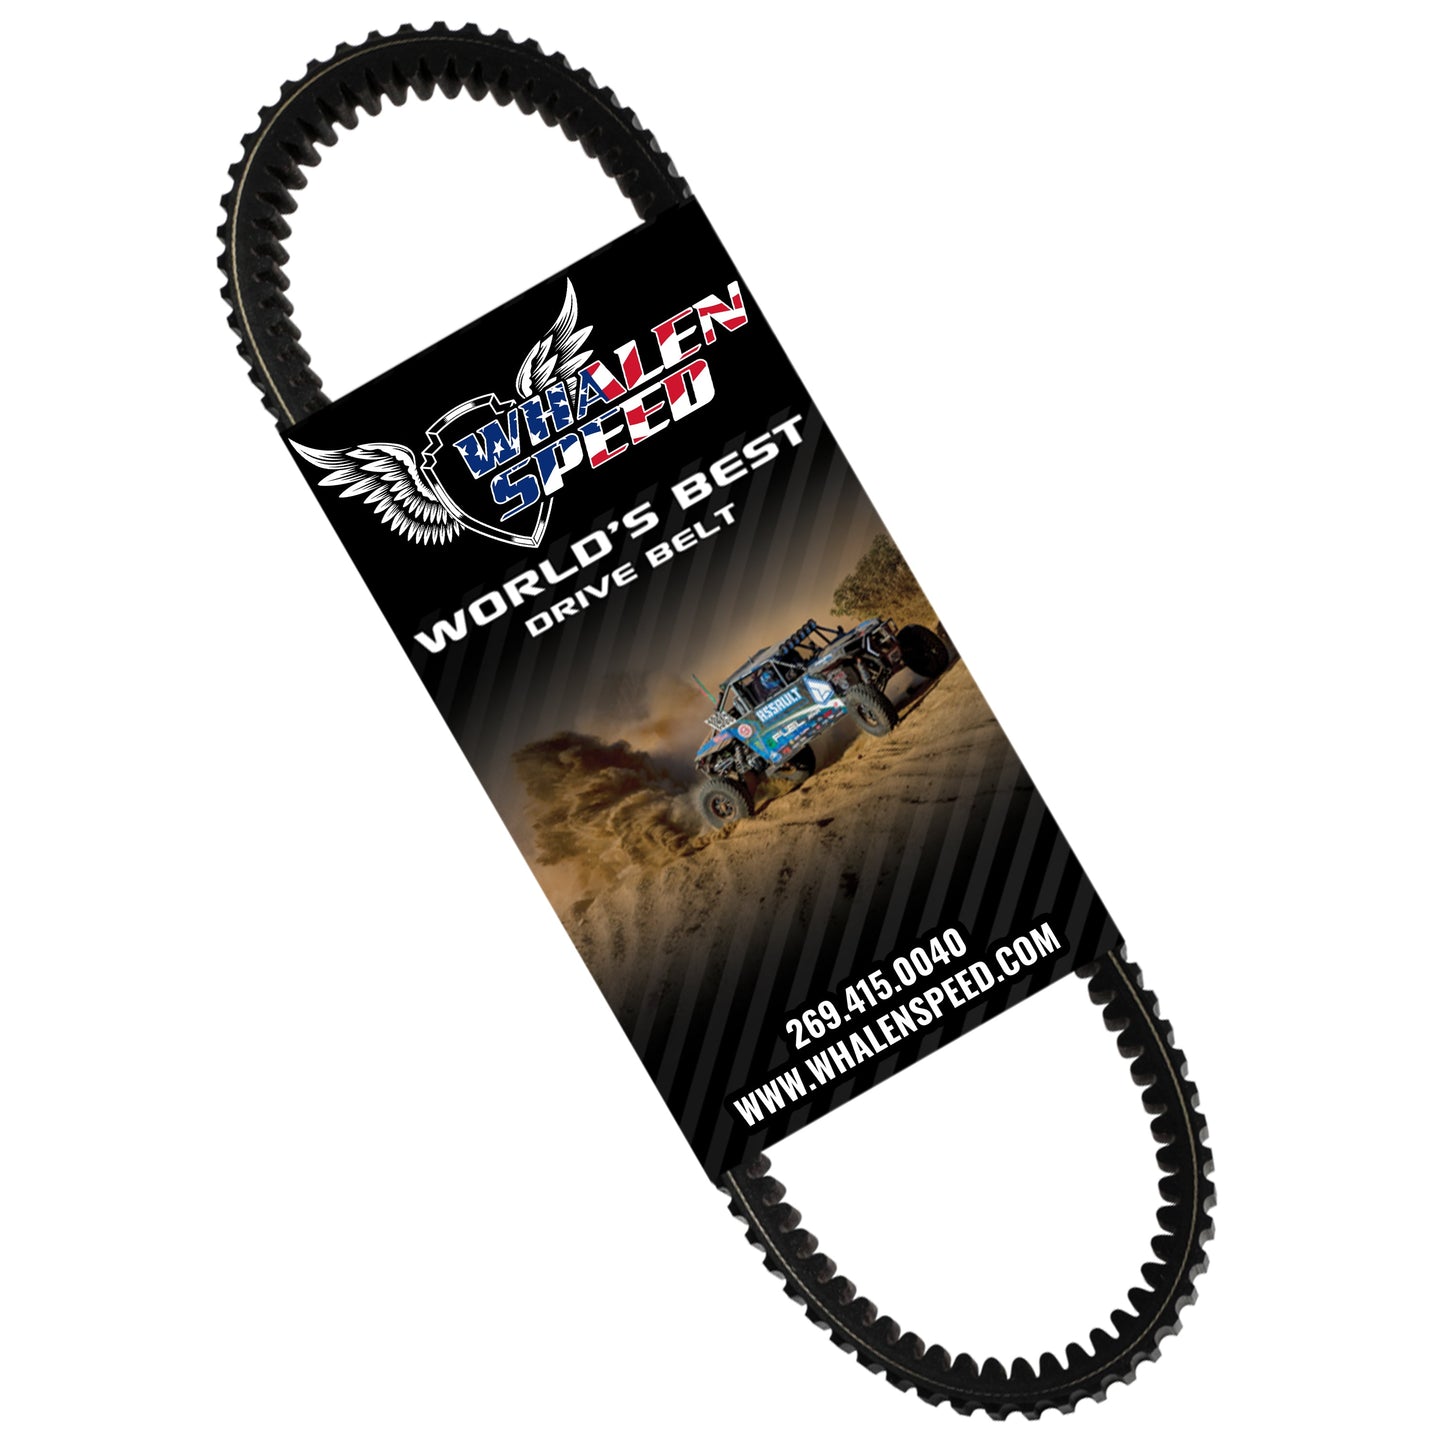 WSRD World's Best "Duner" Drive Belt | Polaris XP1000